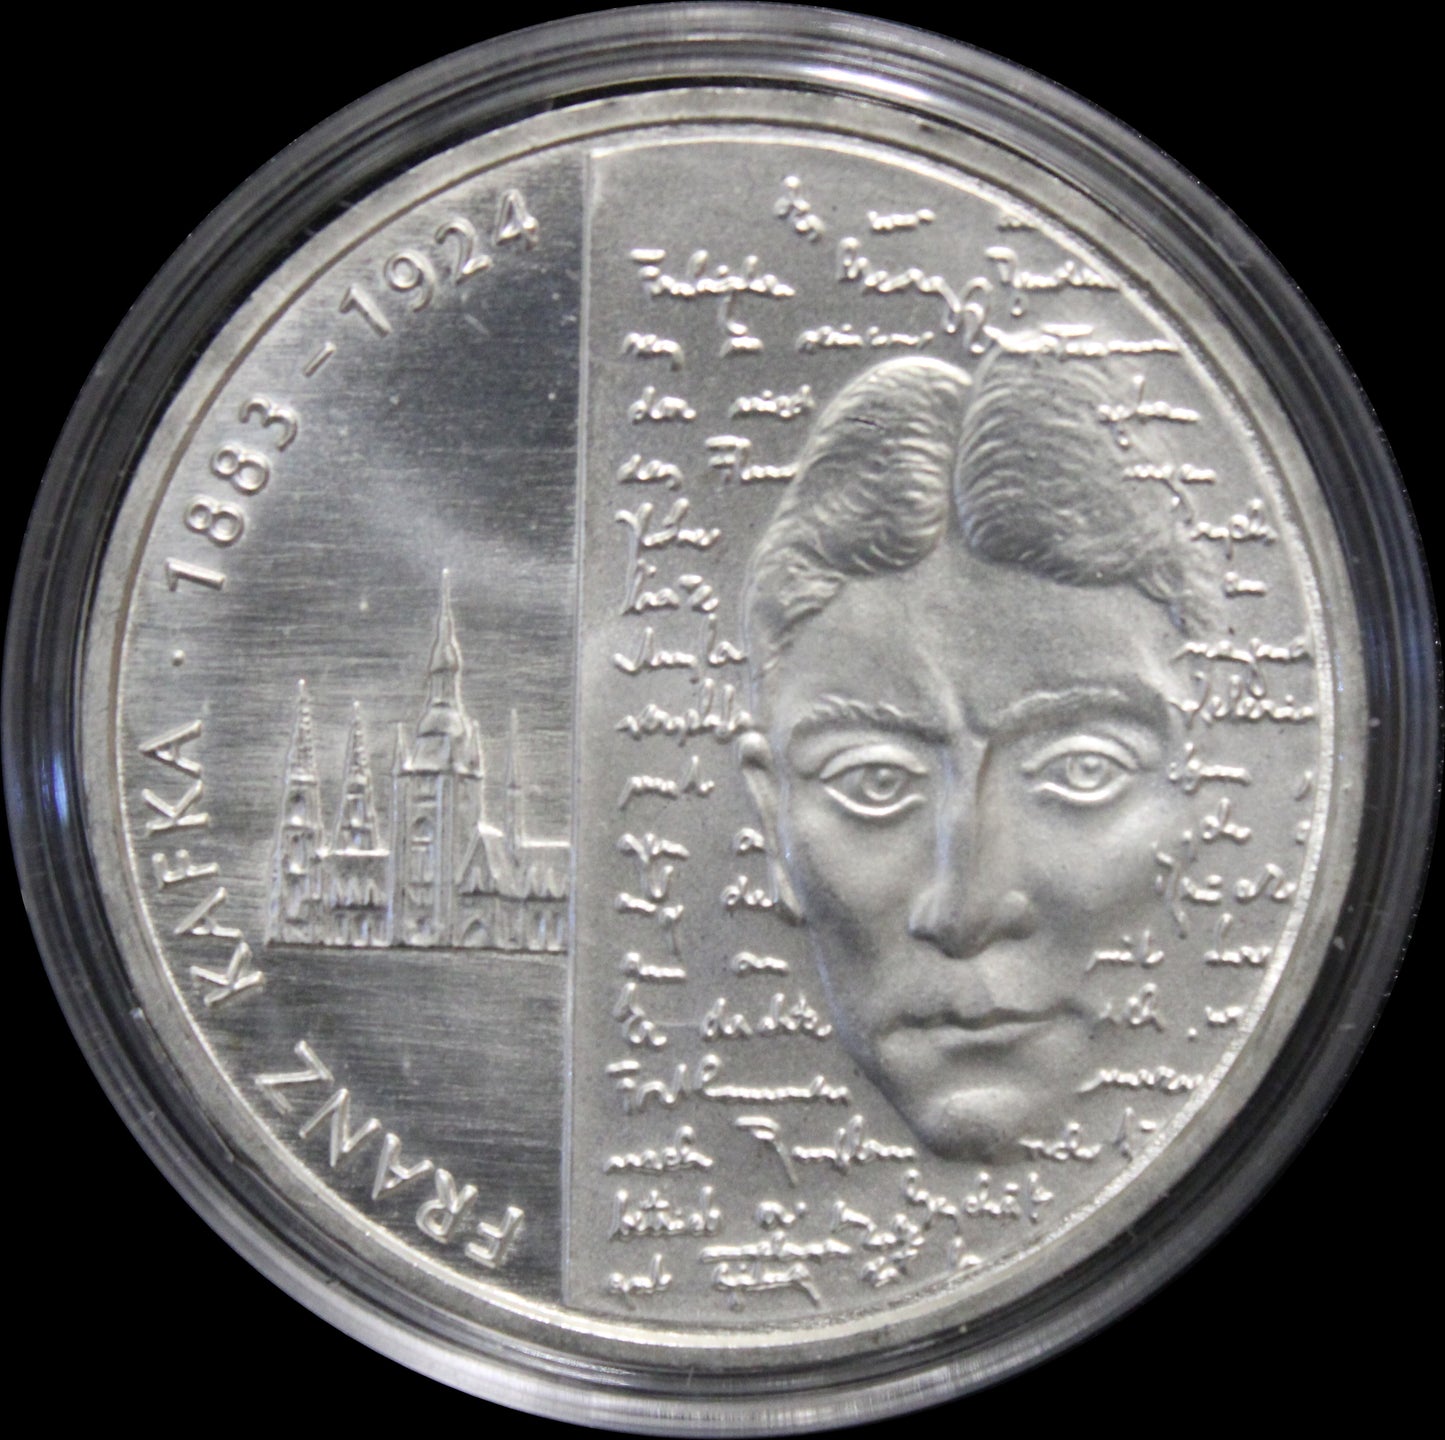 125. GEBURTSTAG FRANZ KAFKA, Serie 10 € Silber Gedenkmünzen Deutschland, Stempelglanz, 2008